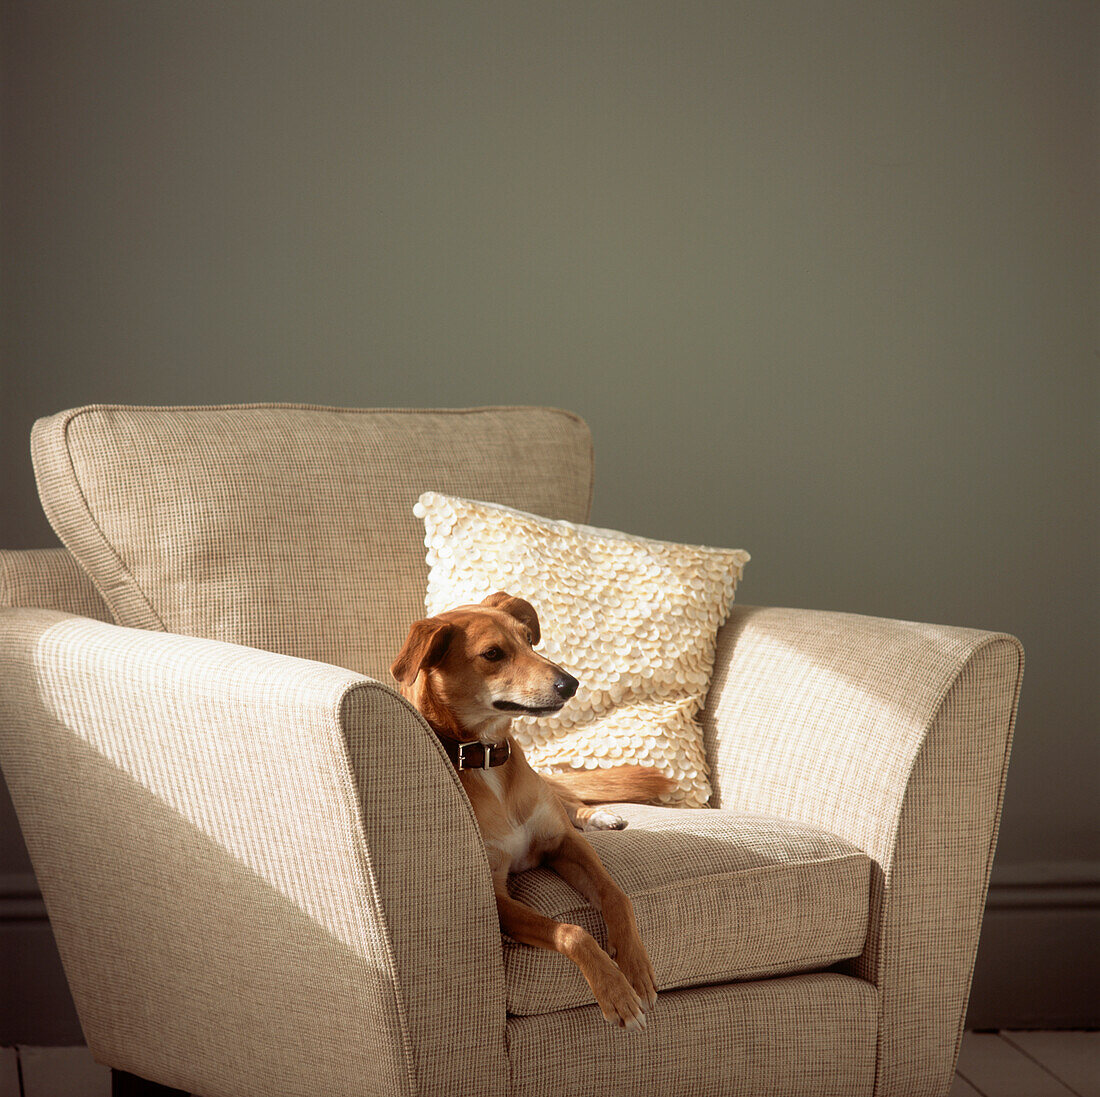 Hund auf einem Sessel in einem Wohnzimmer liegend